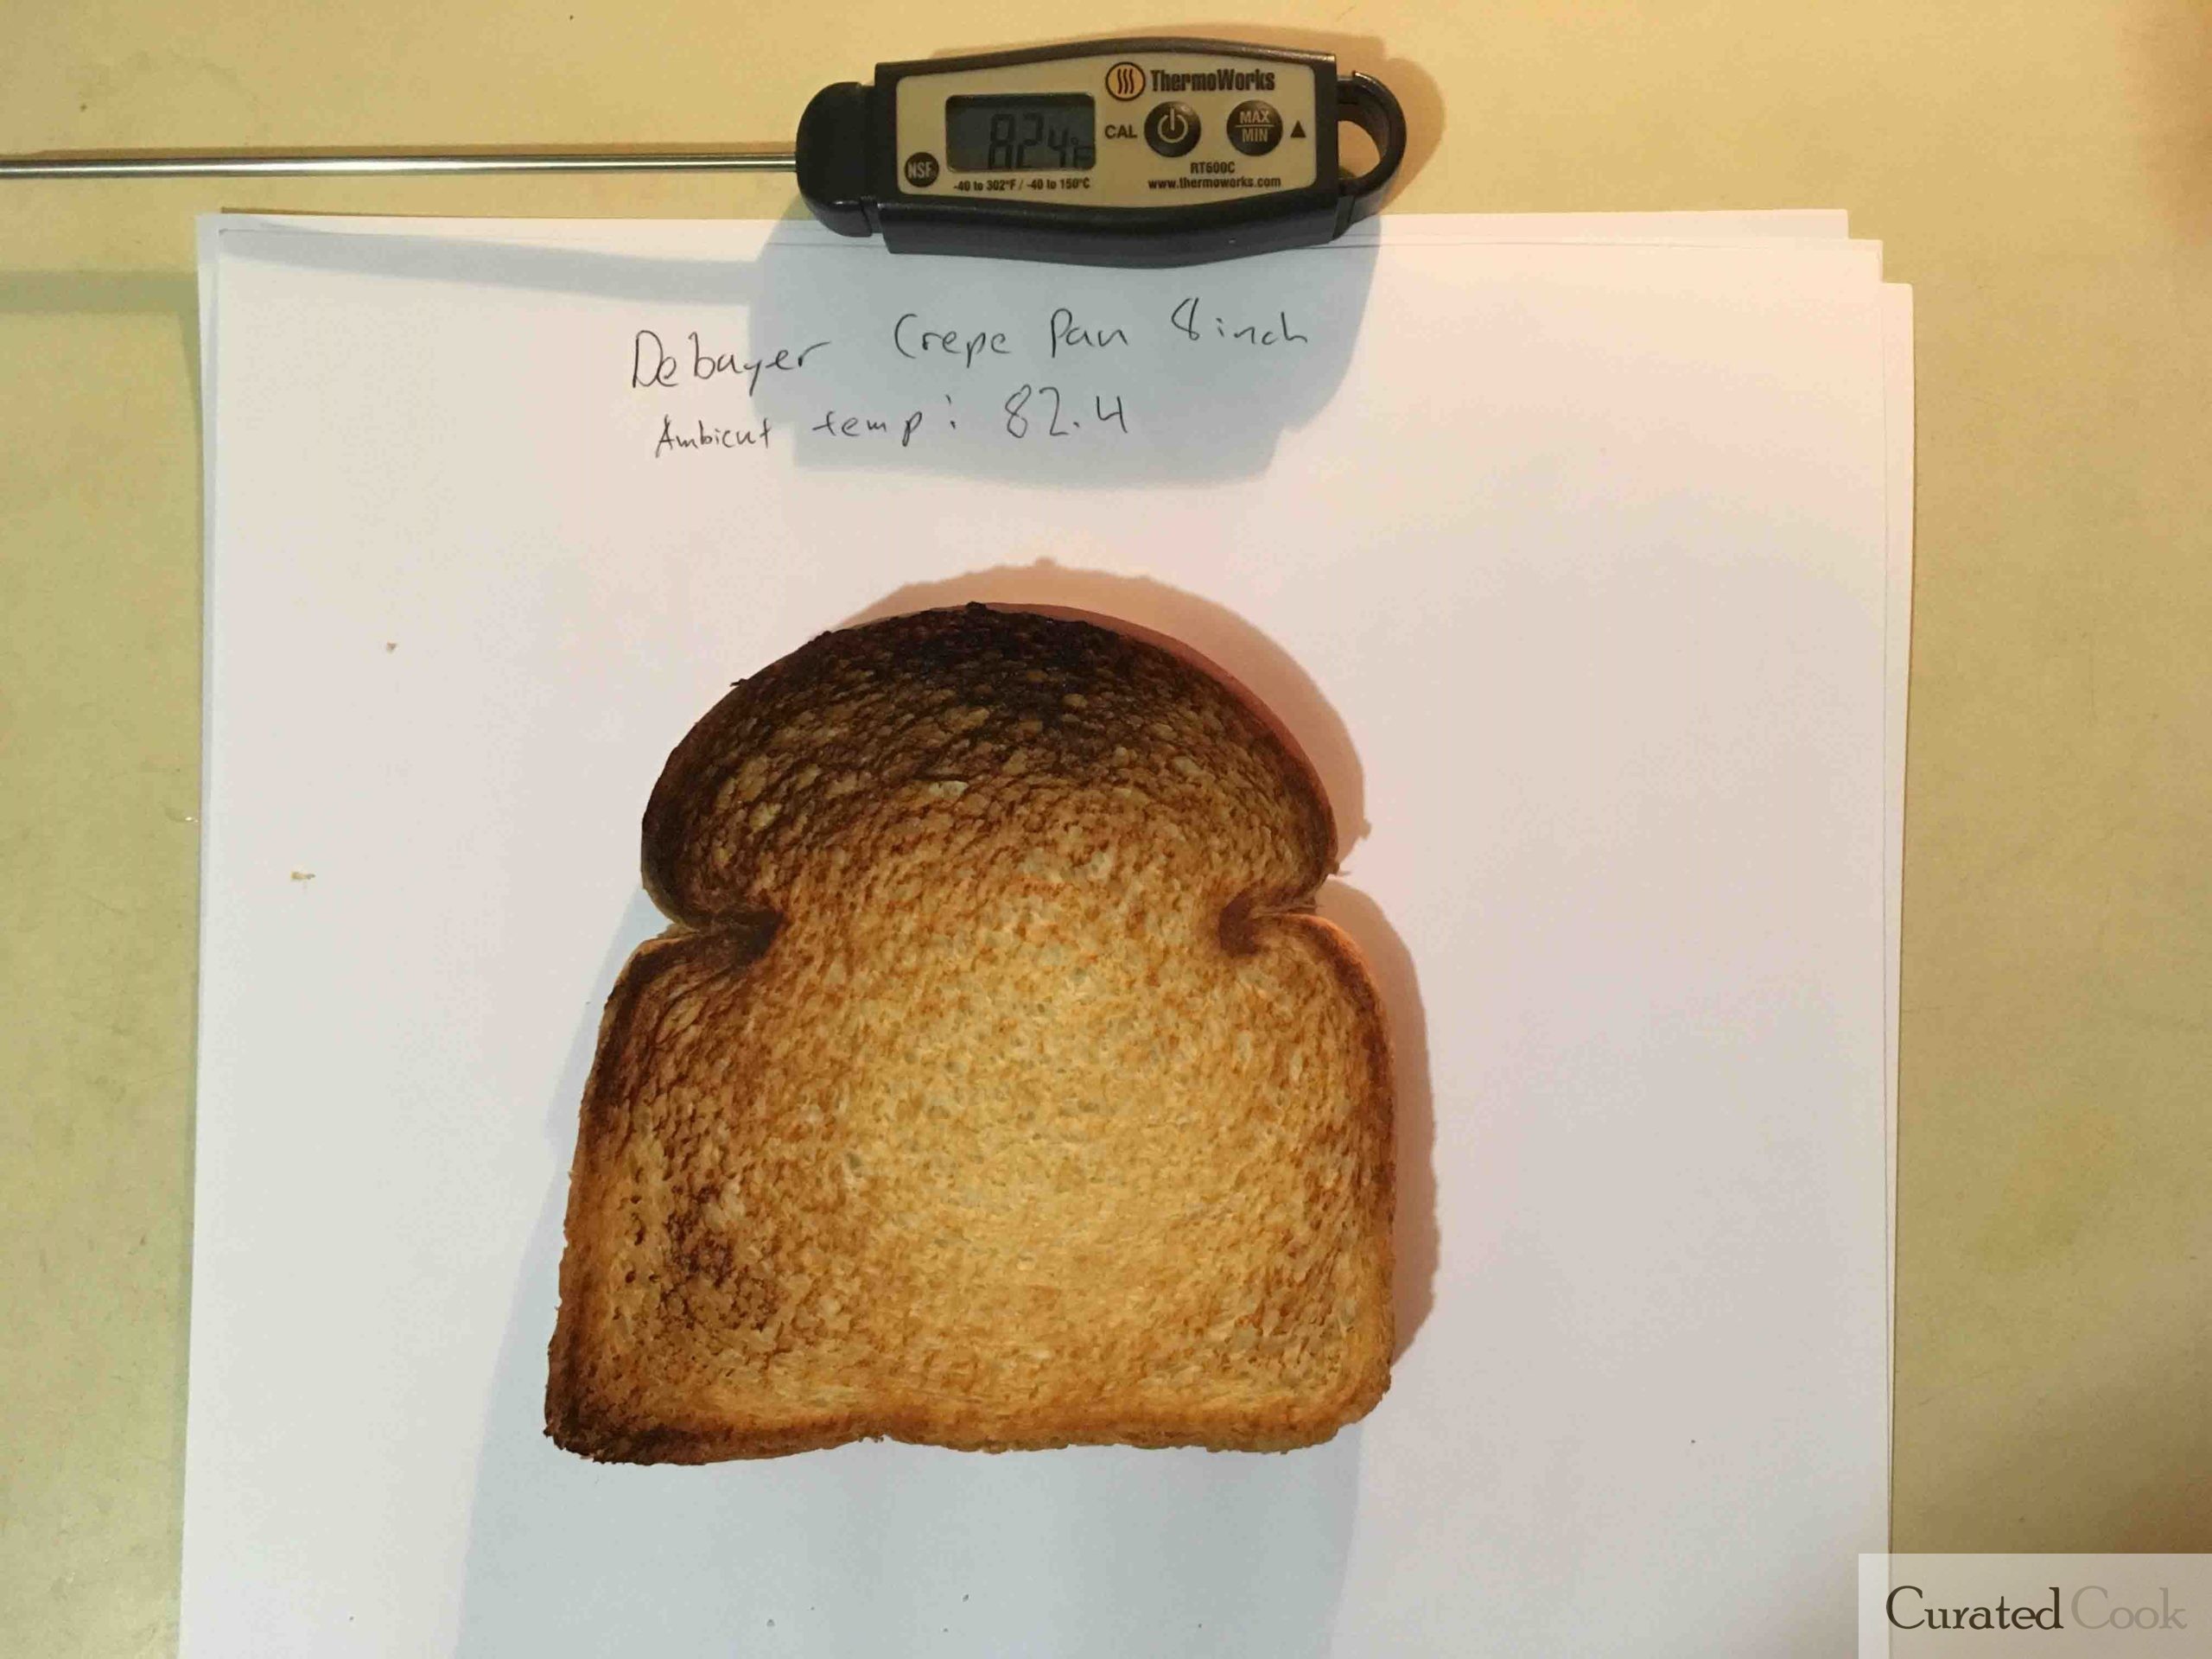 De Buyer Crepe Pan Toast Test